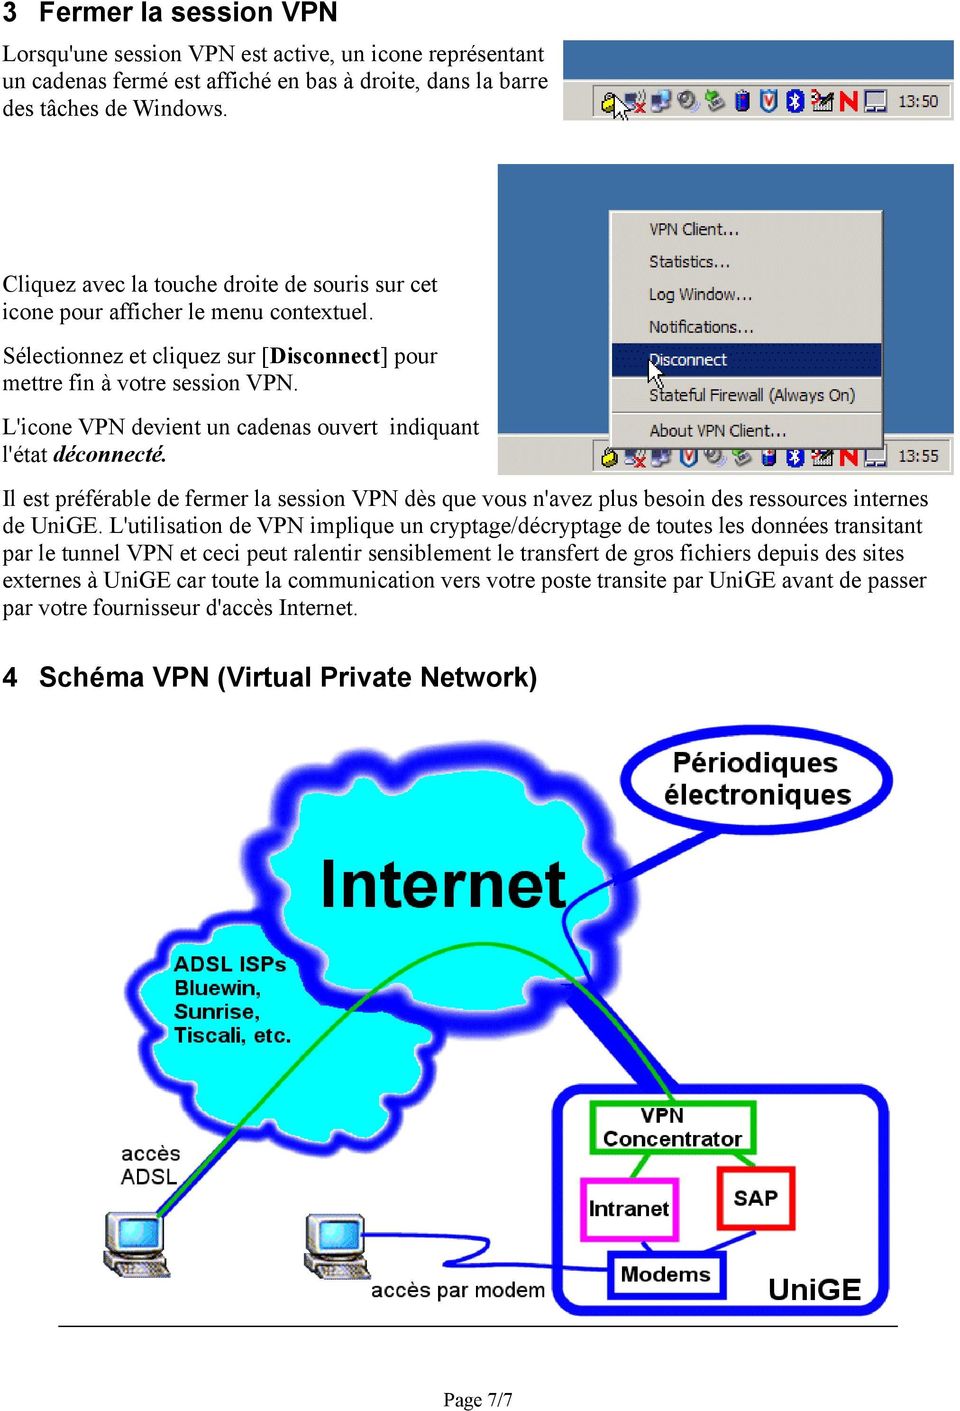 L'icone VPN devient un cadenas ouvert indiquant l'état déconnecté. Il est préférable de fermer la session VPN dès que vous n'avez plus besoin des ressources internes de UniGE.